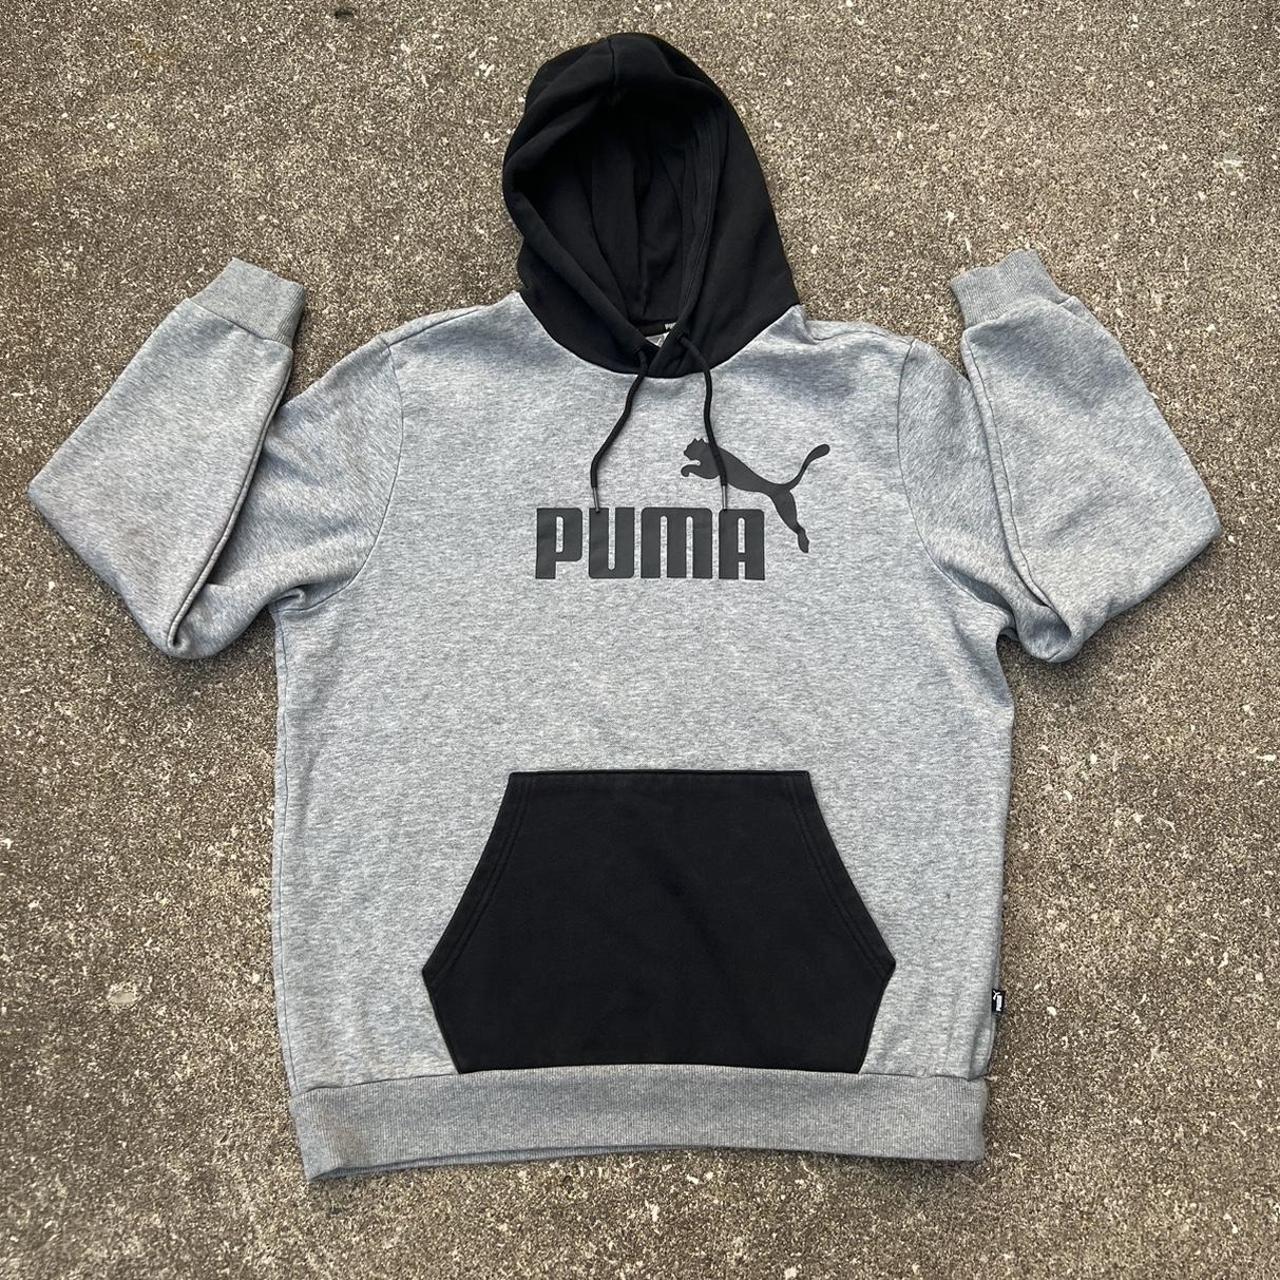 Puma Logo Hoodie Streetwear, Skater, Outdoors Long... - Depop